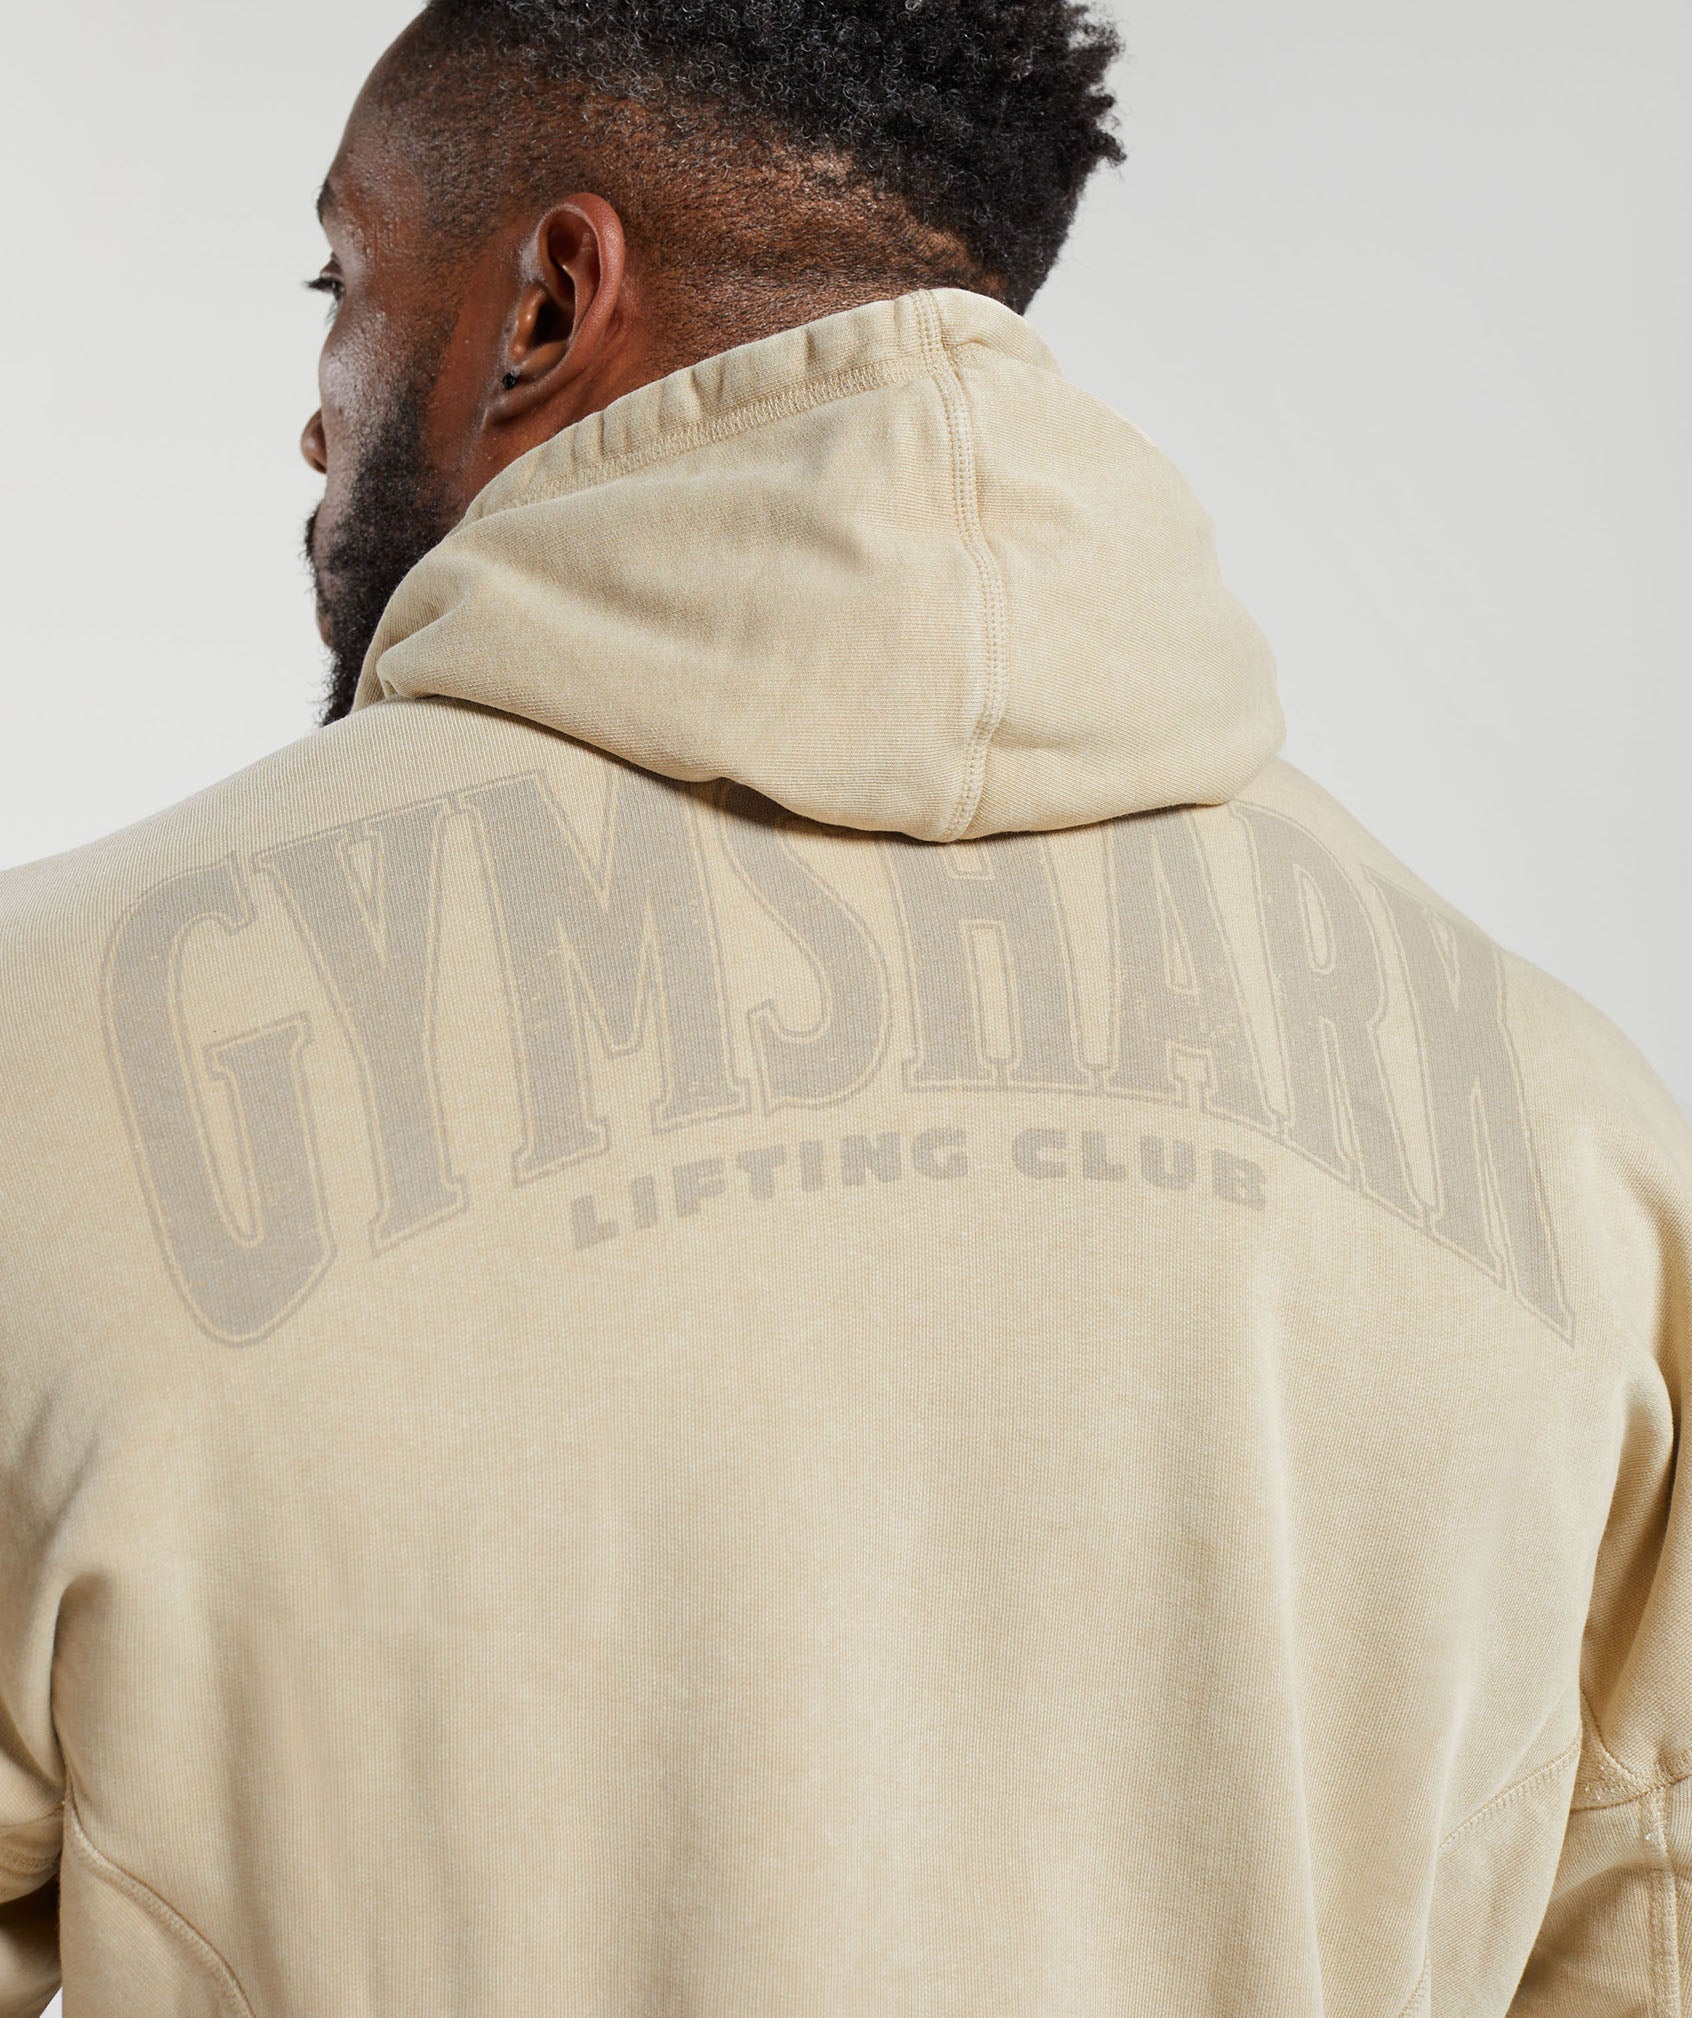 Gymshark zip hoodie • Tise